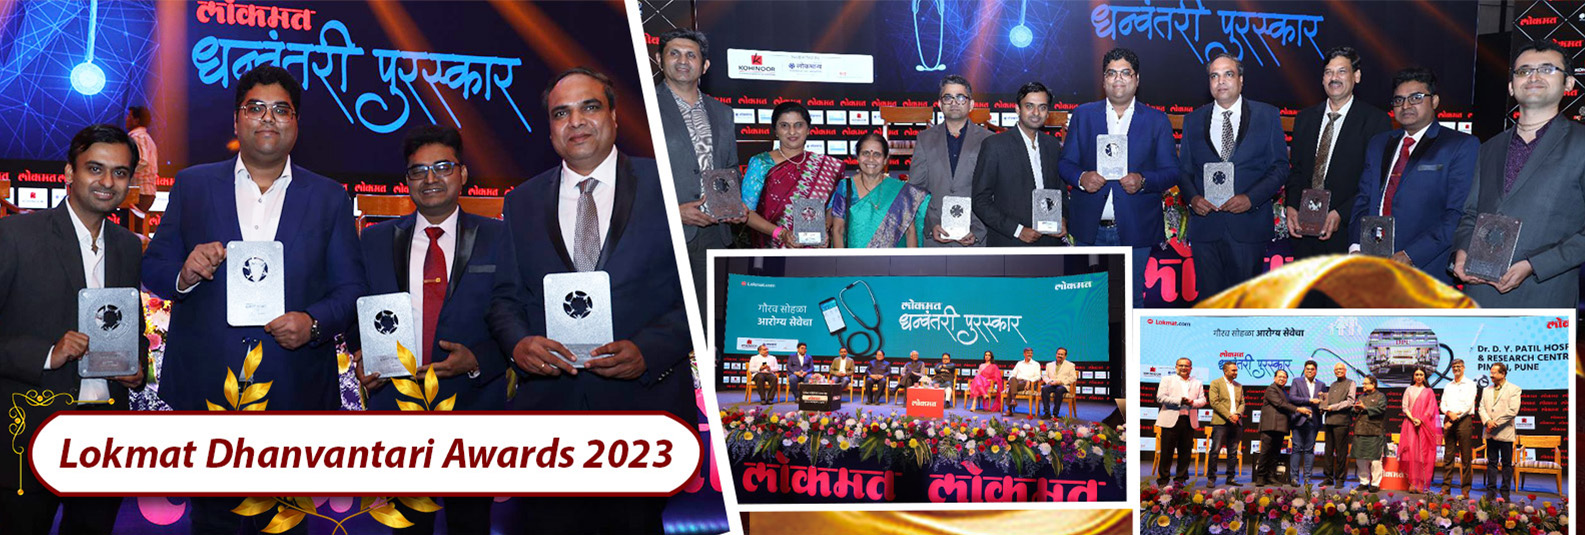 The Lokmat Dhanvantari Awards